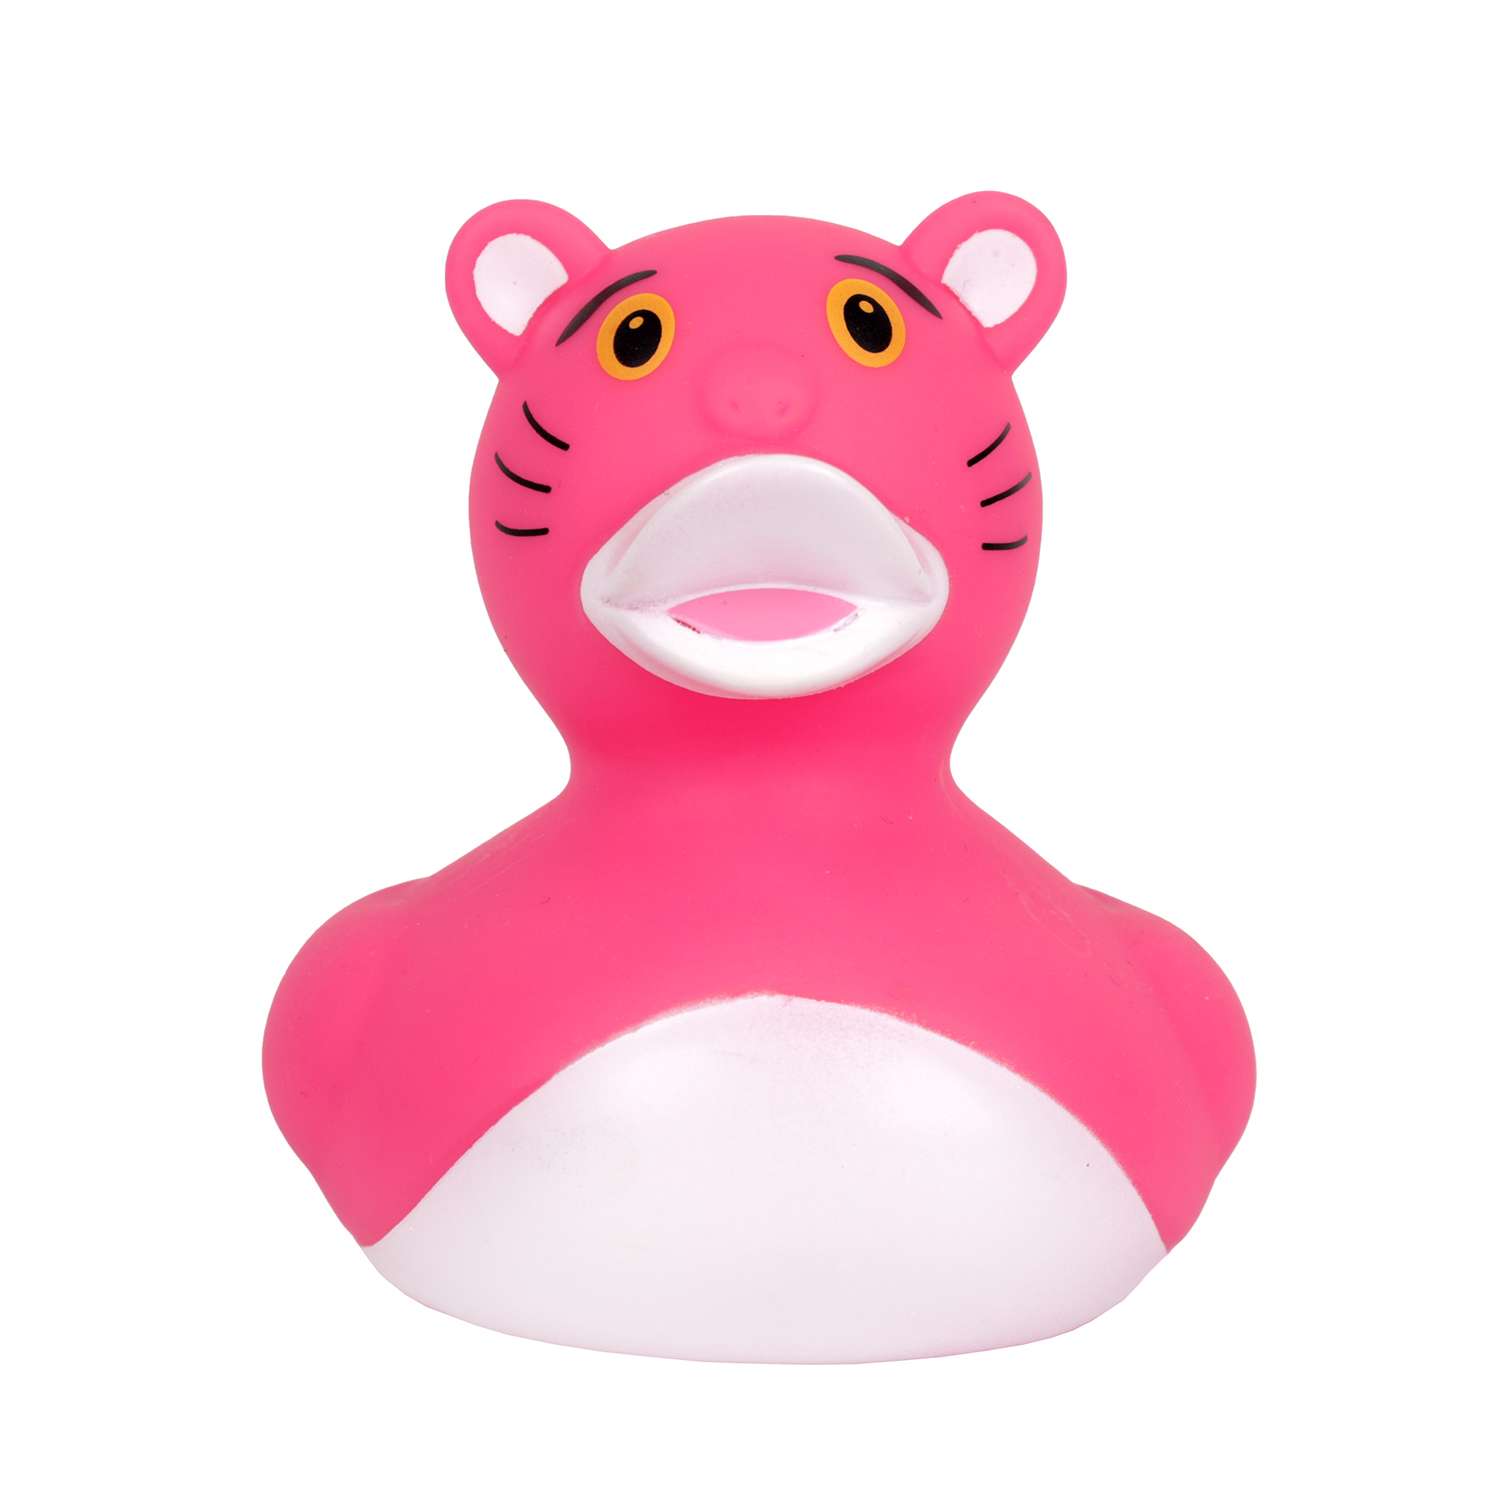 Игрушка для ванны сувенир Funny ducks Розовая пантера уточка 1314 - фото 2